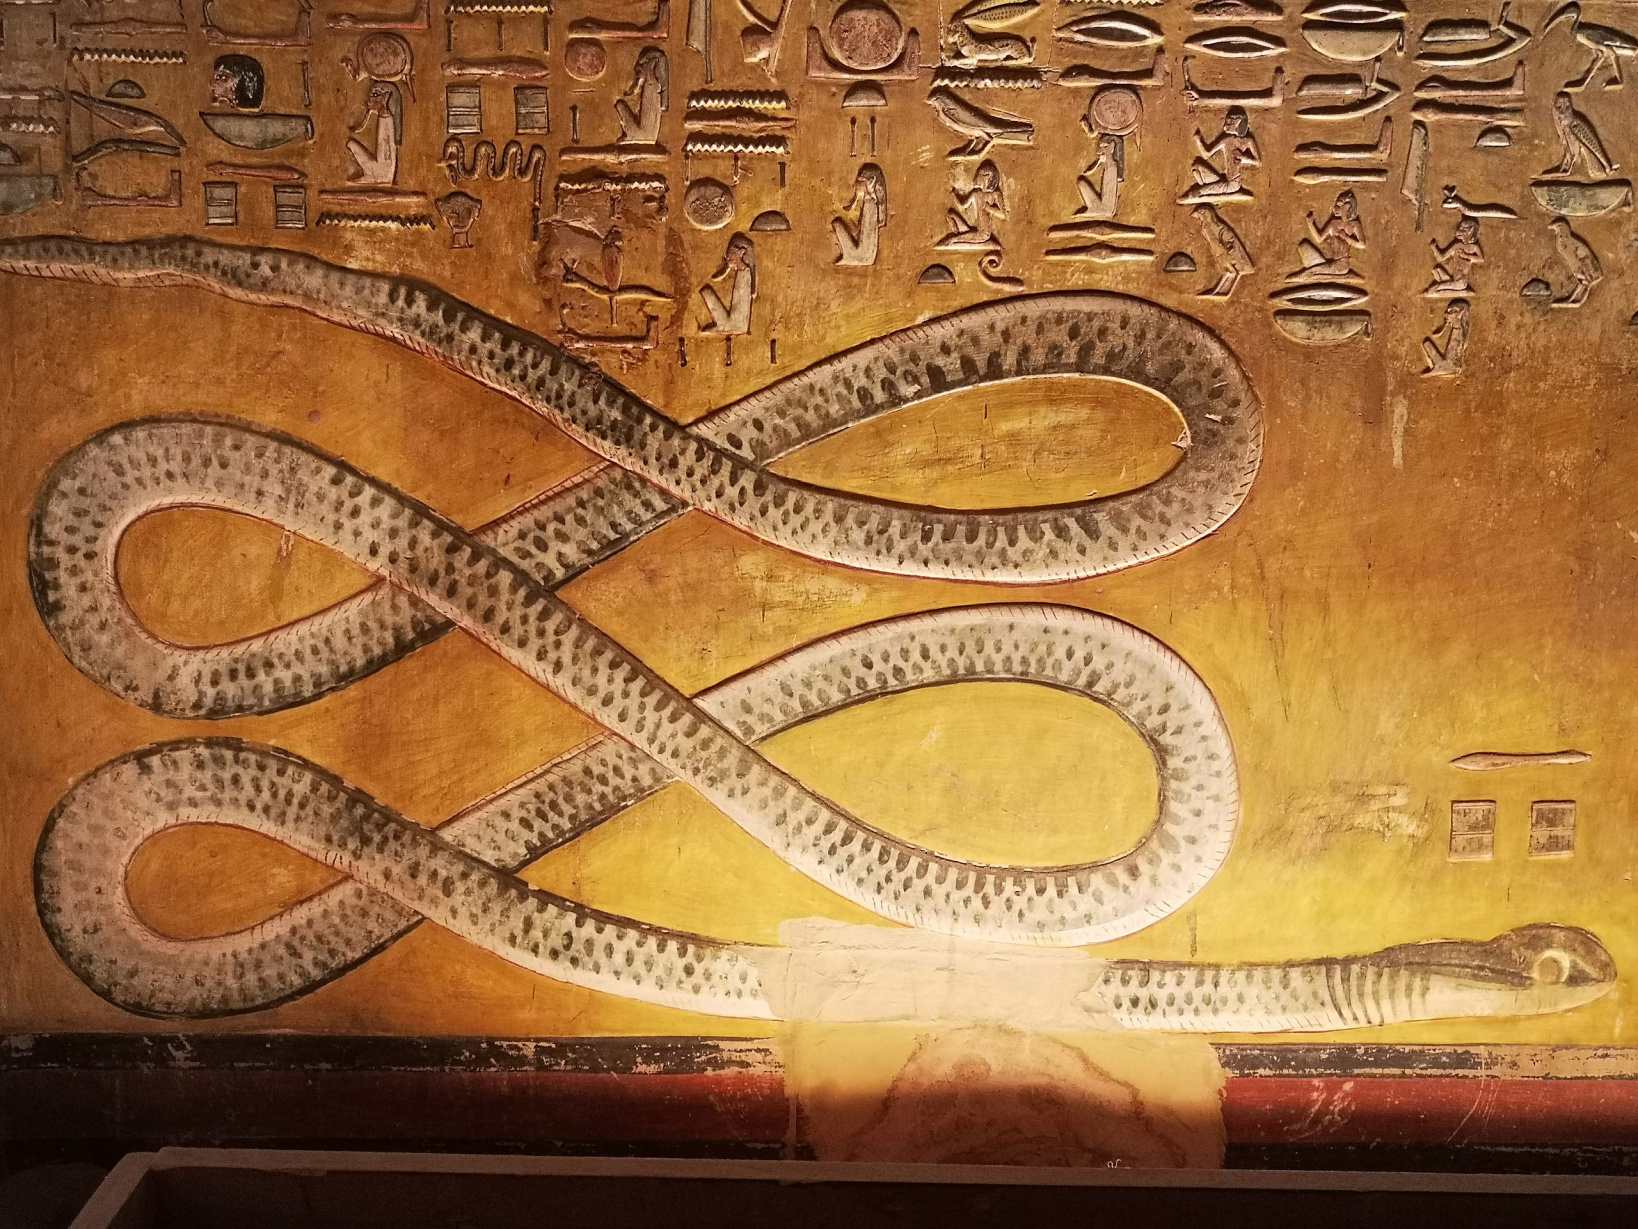 Alte ägyptische Kunst, die Apep darstellt